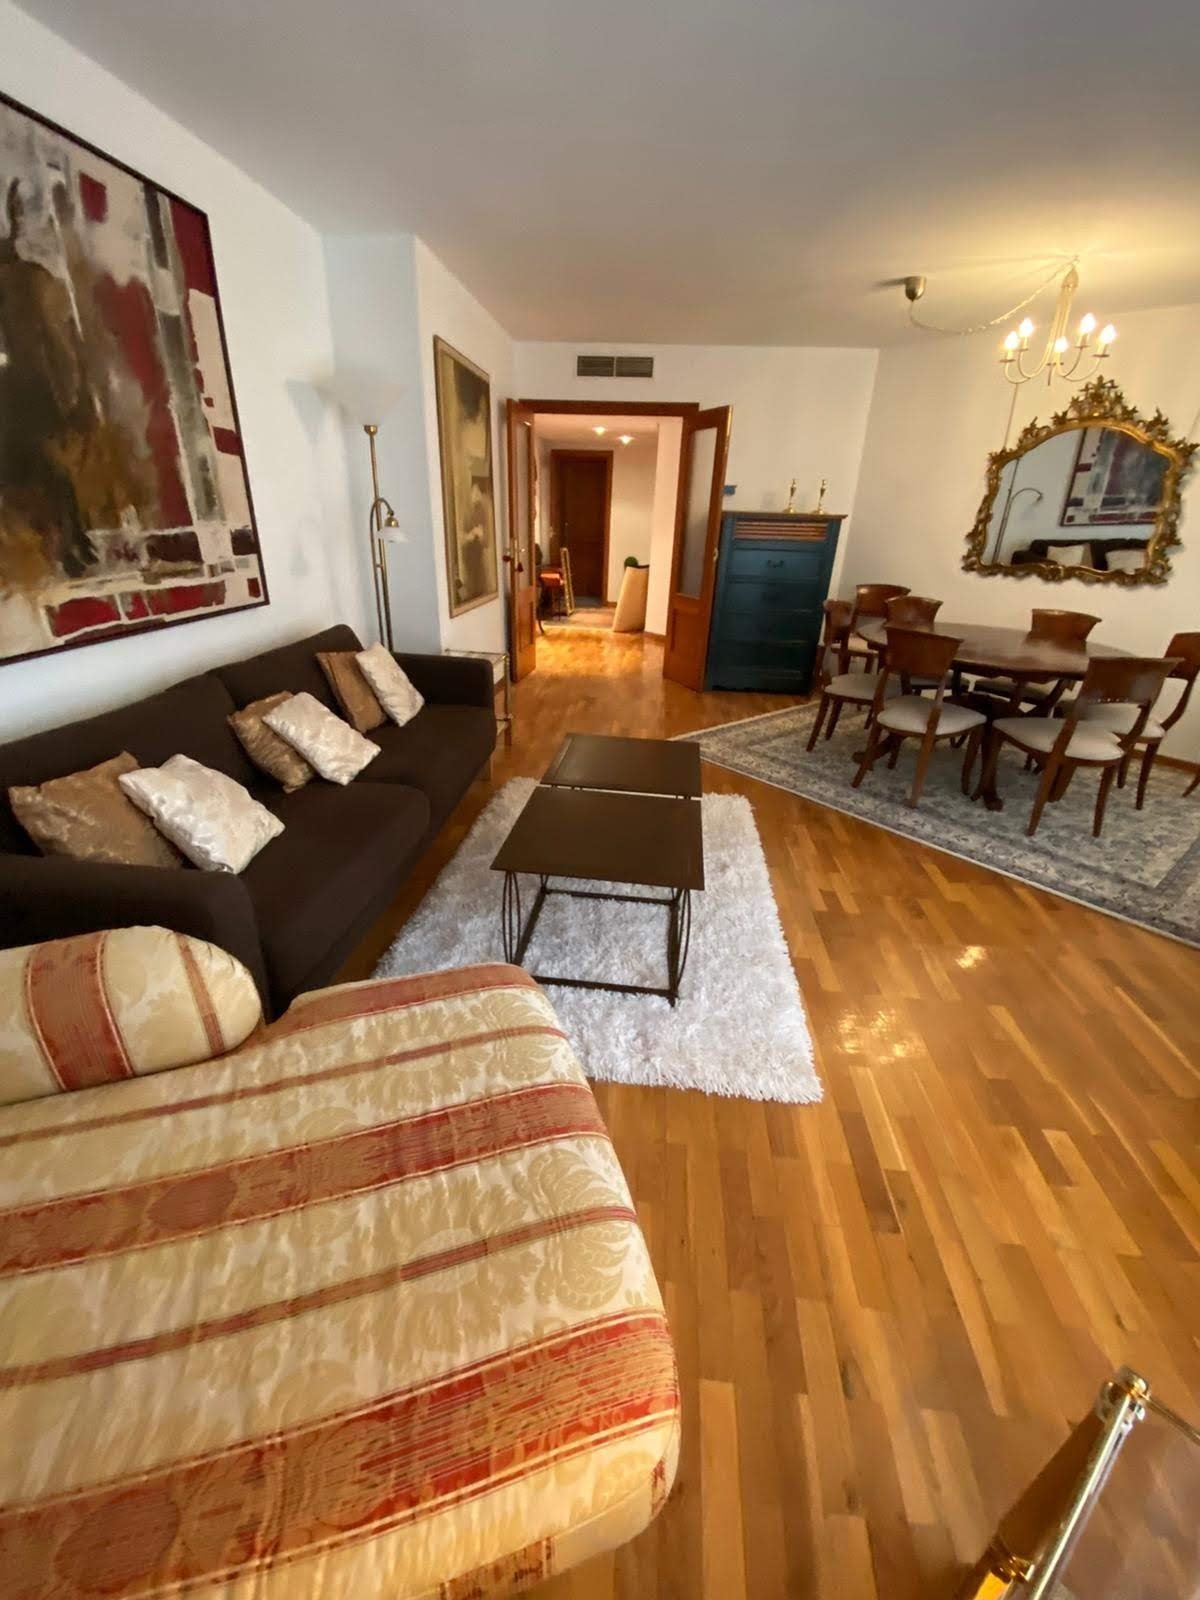 Ad Rental Apartment Palma de Mallorca (07001) ref:L0434PM